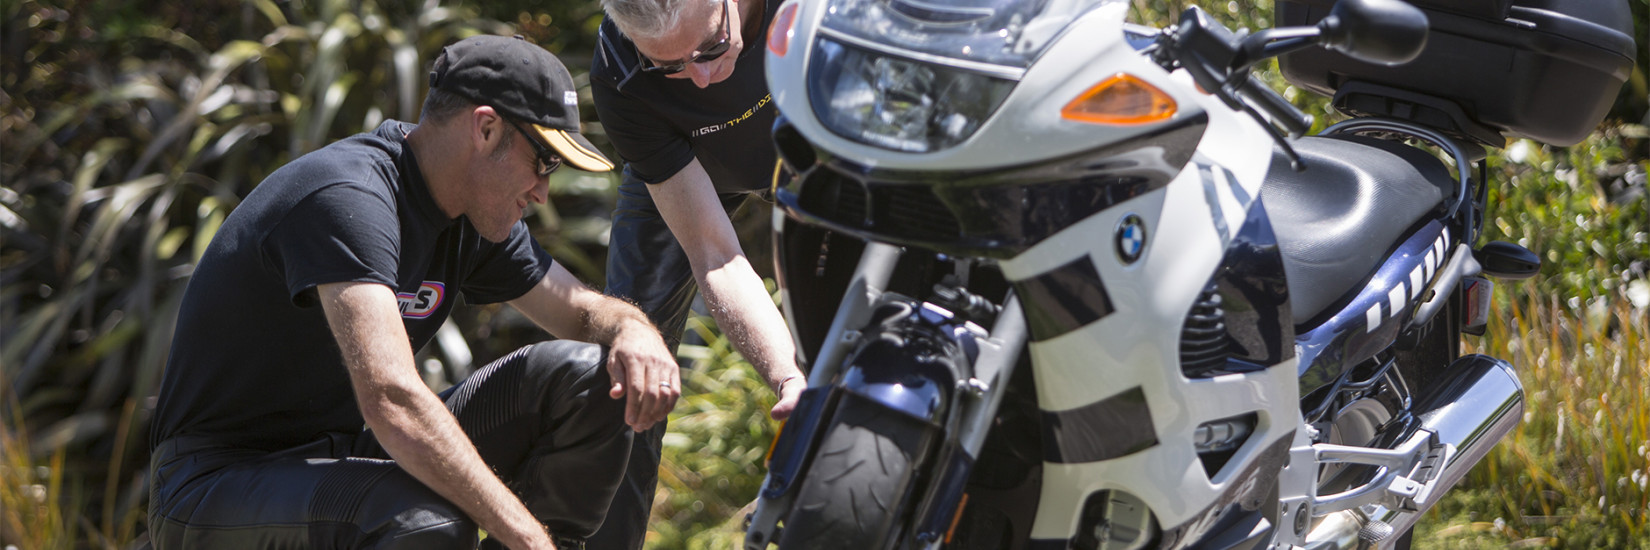 Two men inspecting rear of motorbike